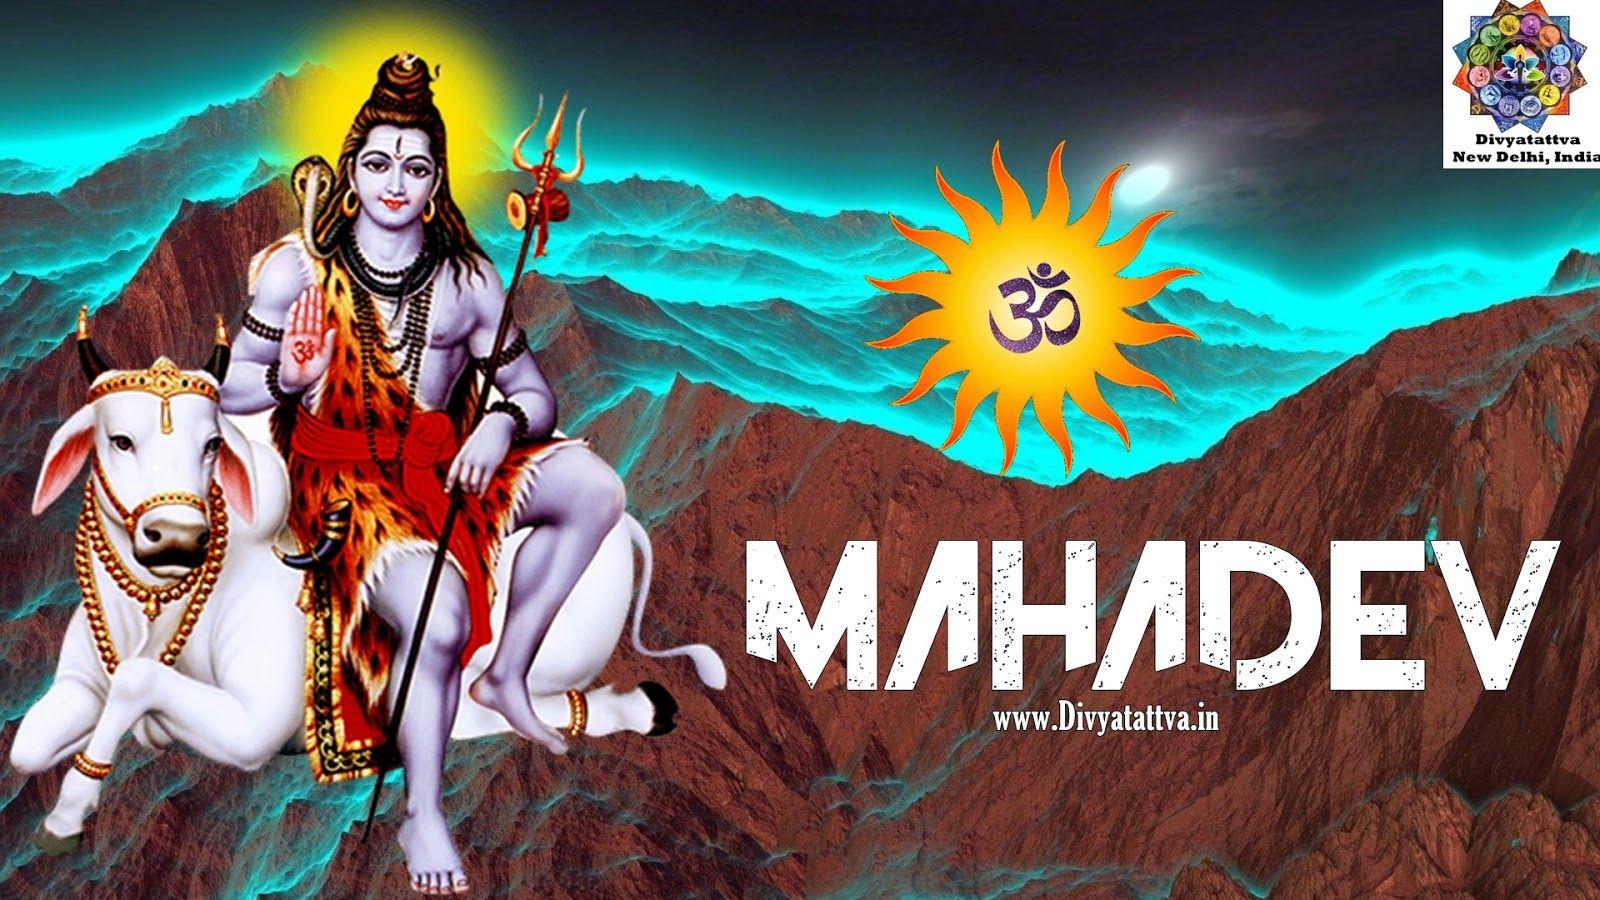 1600x900 Divyatattva Chiêm tinh Tử vi miễn phí Ngoại cảm Bói bài Yoga Tantra Hình ảnh huyền bí Video: Shivaratri Hình nền HD Hình ảnh Chúa Shiva Mahadev Bởi Rohit Anand